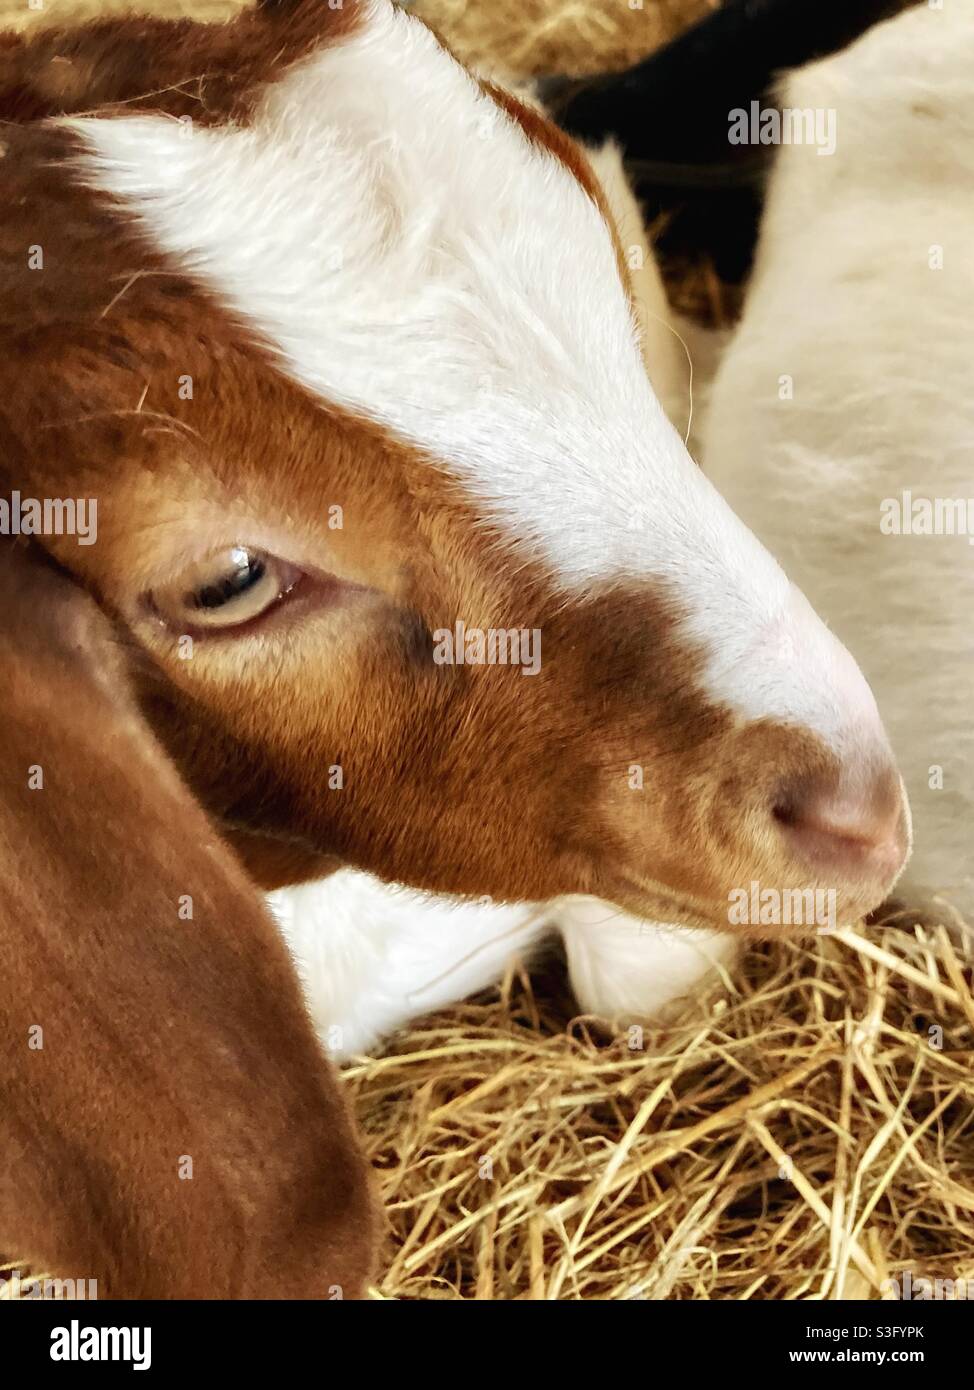 Le visage d'un enfant de chèvre s'assit sur le foin dans une ferme Banque D'Images